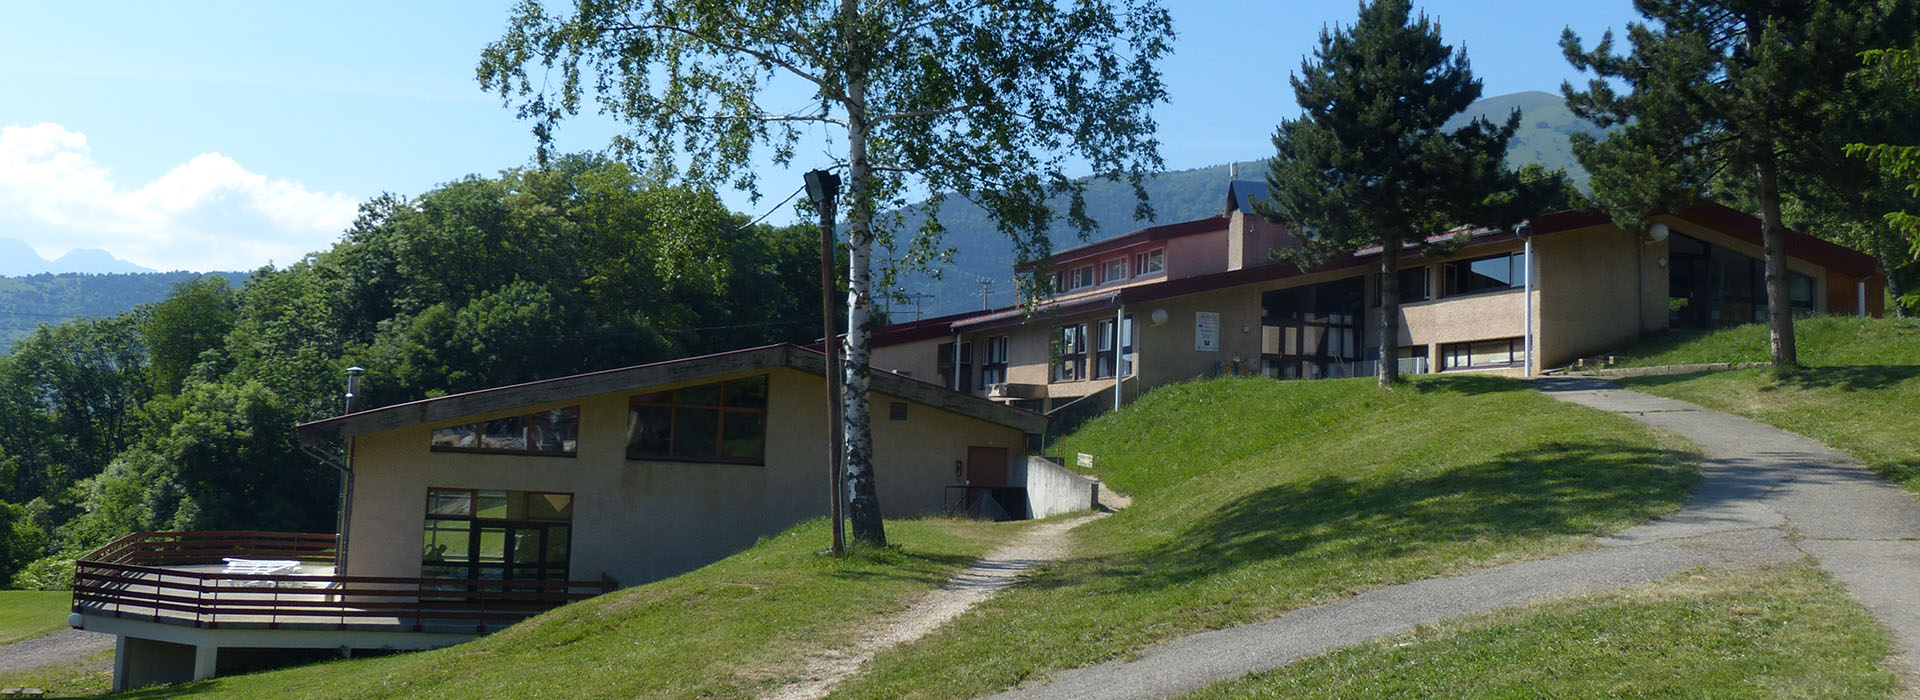 Les Aveilles - Hôtel, gîtes, restaurant et bar avec piscine en Isère (38).